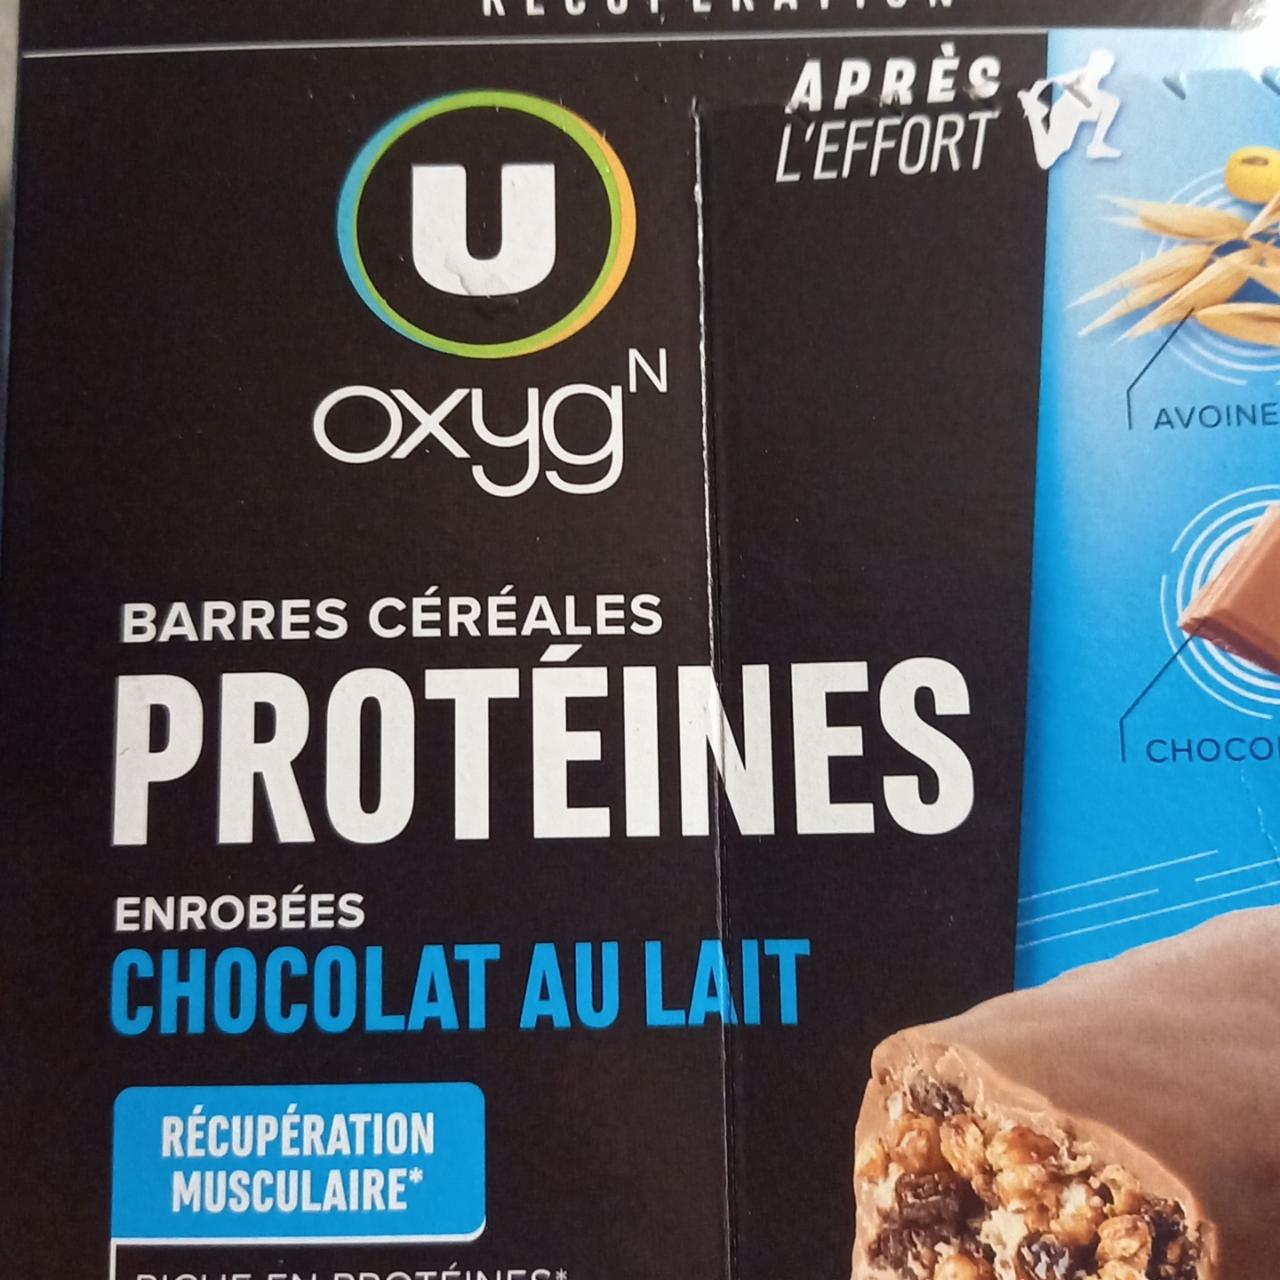 Fotografie - Barres céréales protéinées Chocolat au lait U Oxygn